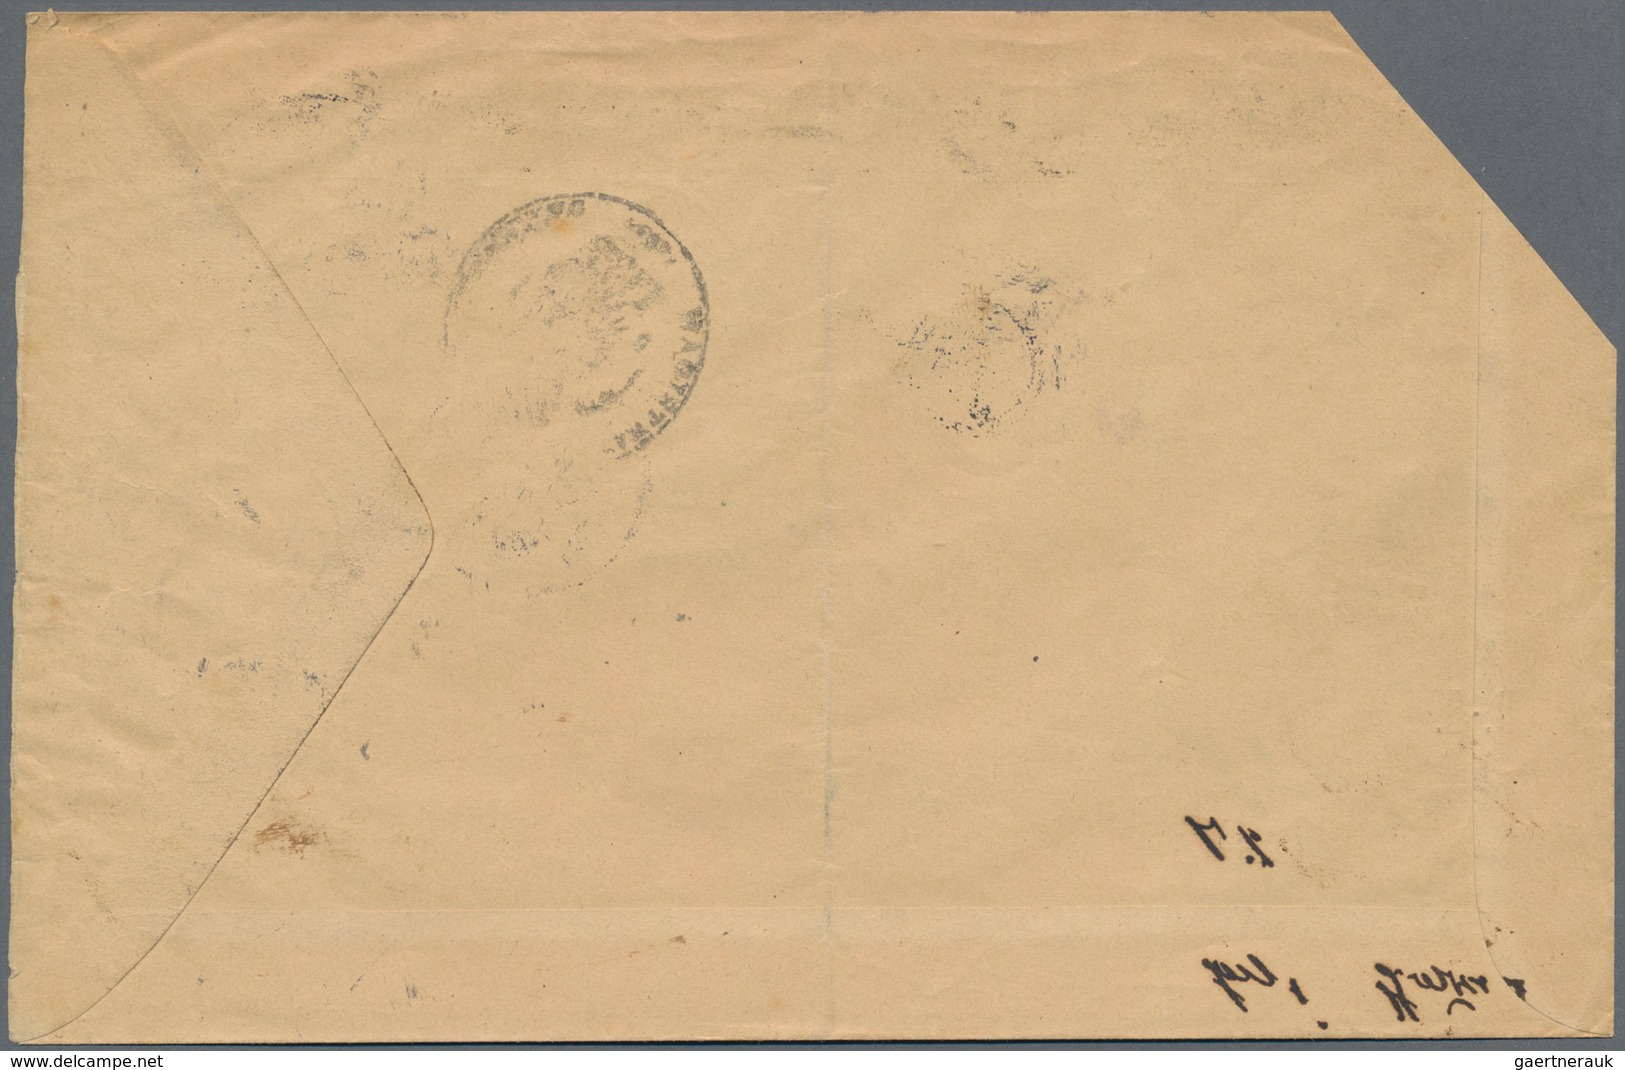 Bayern - Portomarken: 1896. Portomarke 3 Pf, Rötliches Papier Mit Echtem, Kopfstehendem Aufdruck "Vo - Other & Unclassified